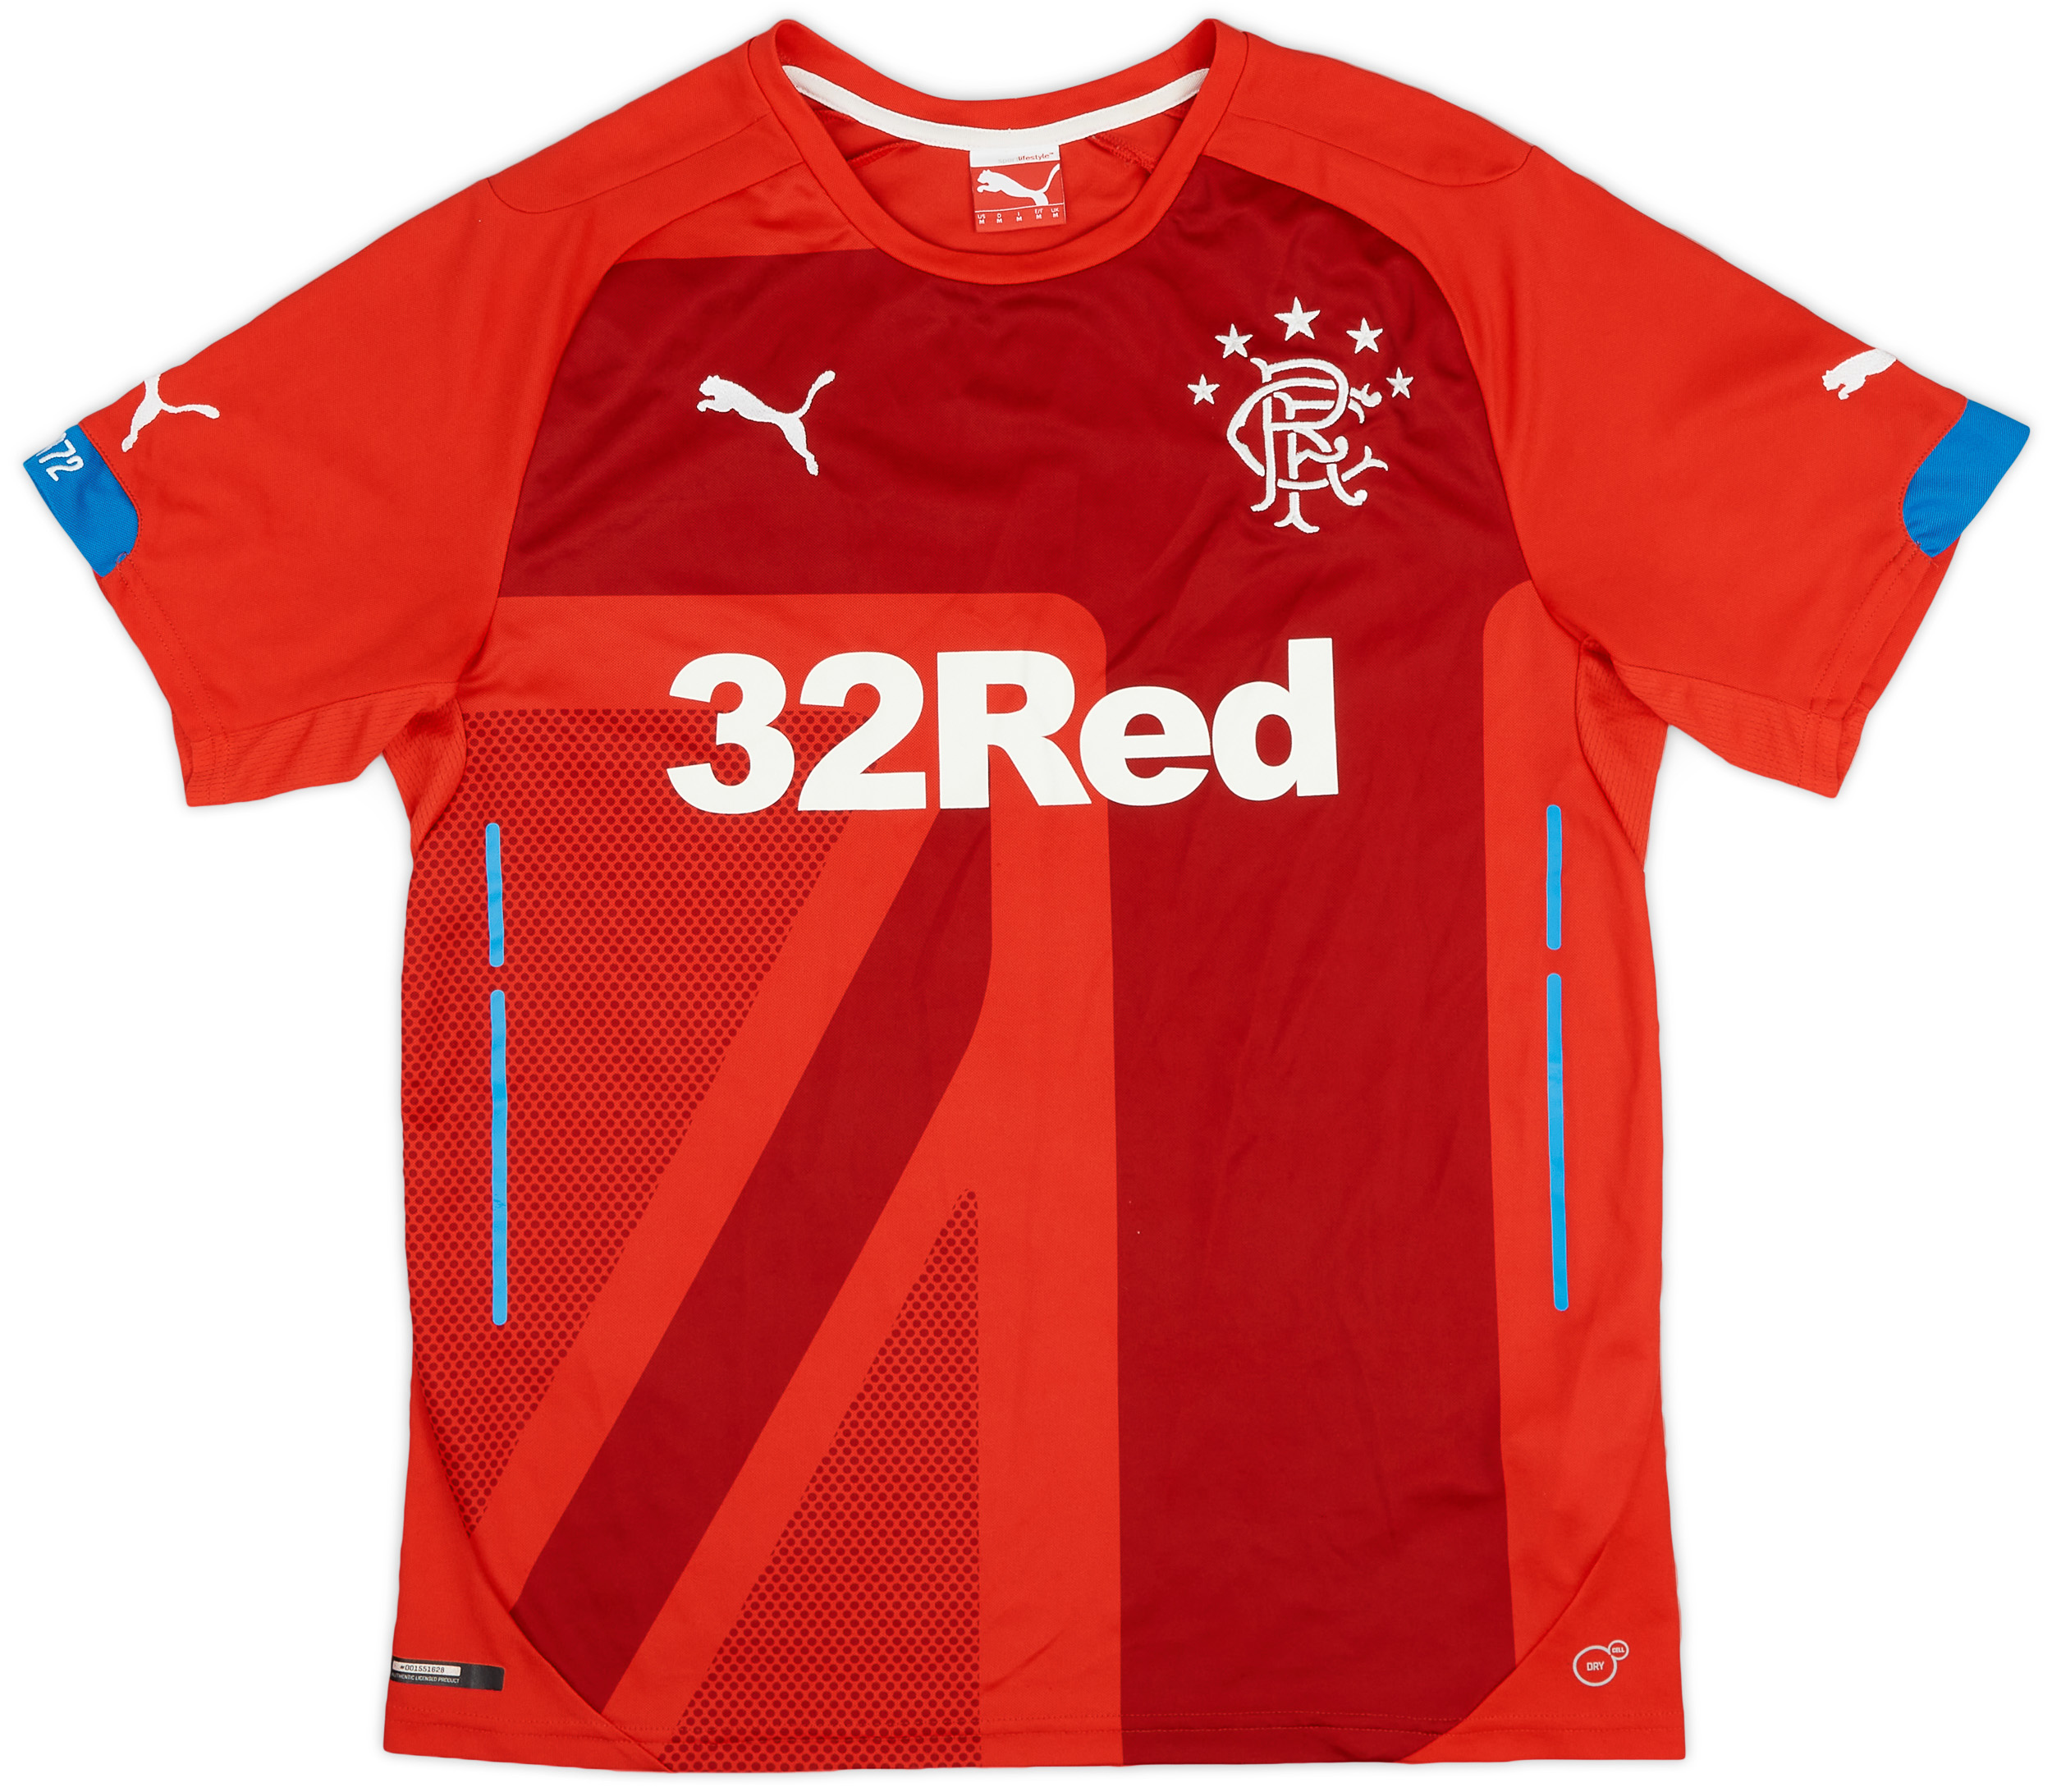 2014-15 Rangers Third Shirt - 8/10 - ()